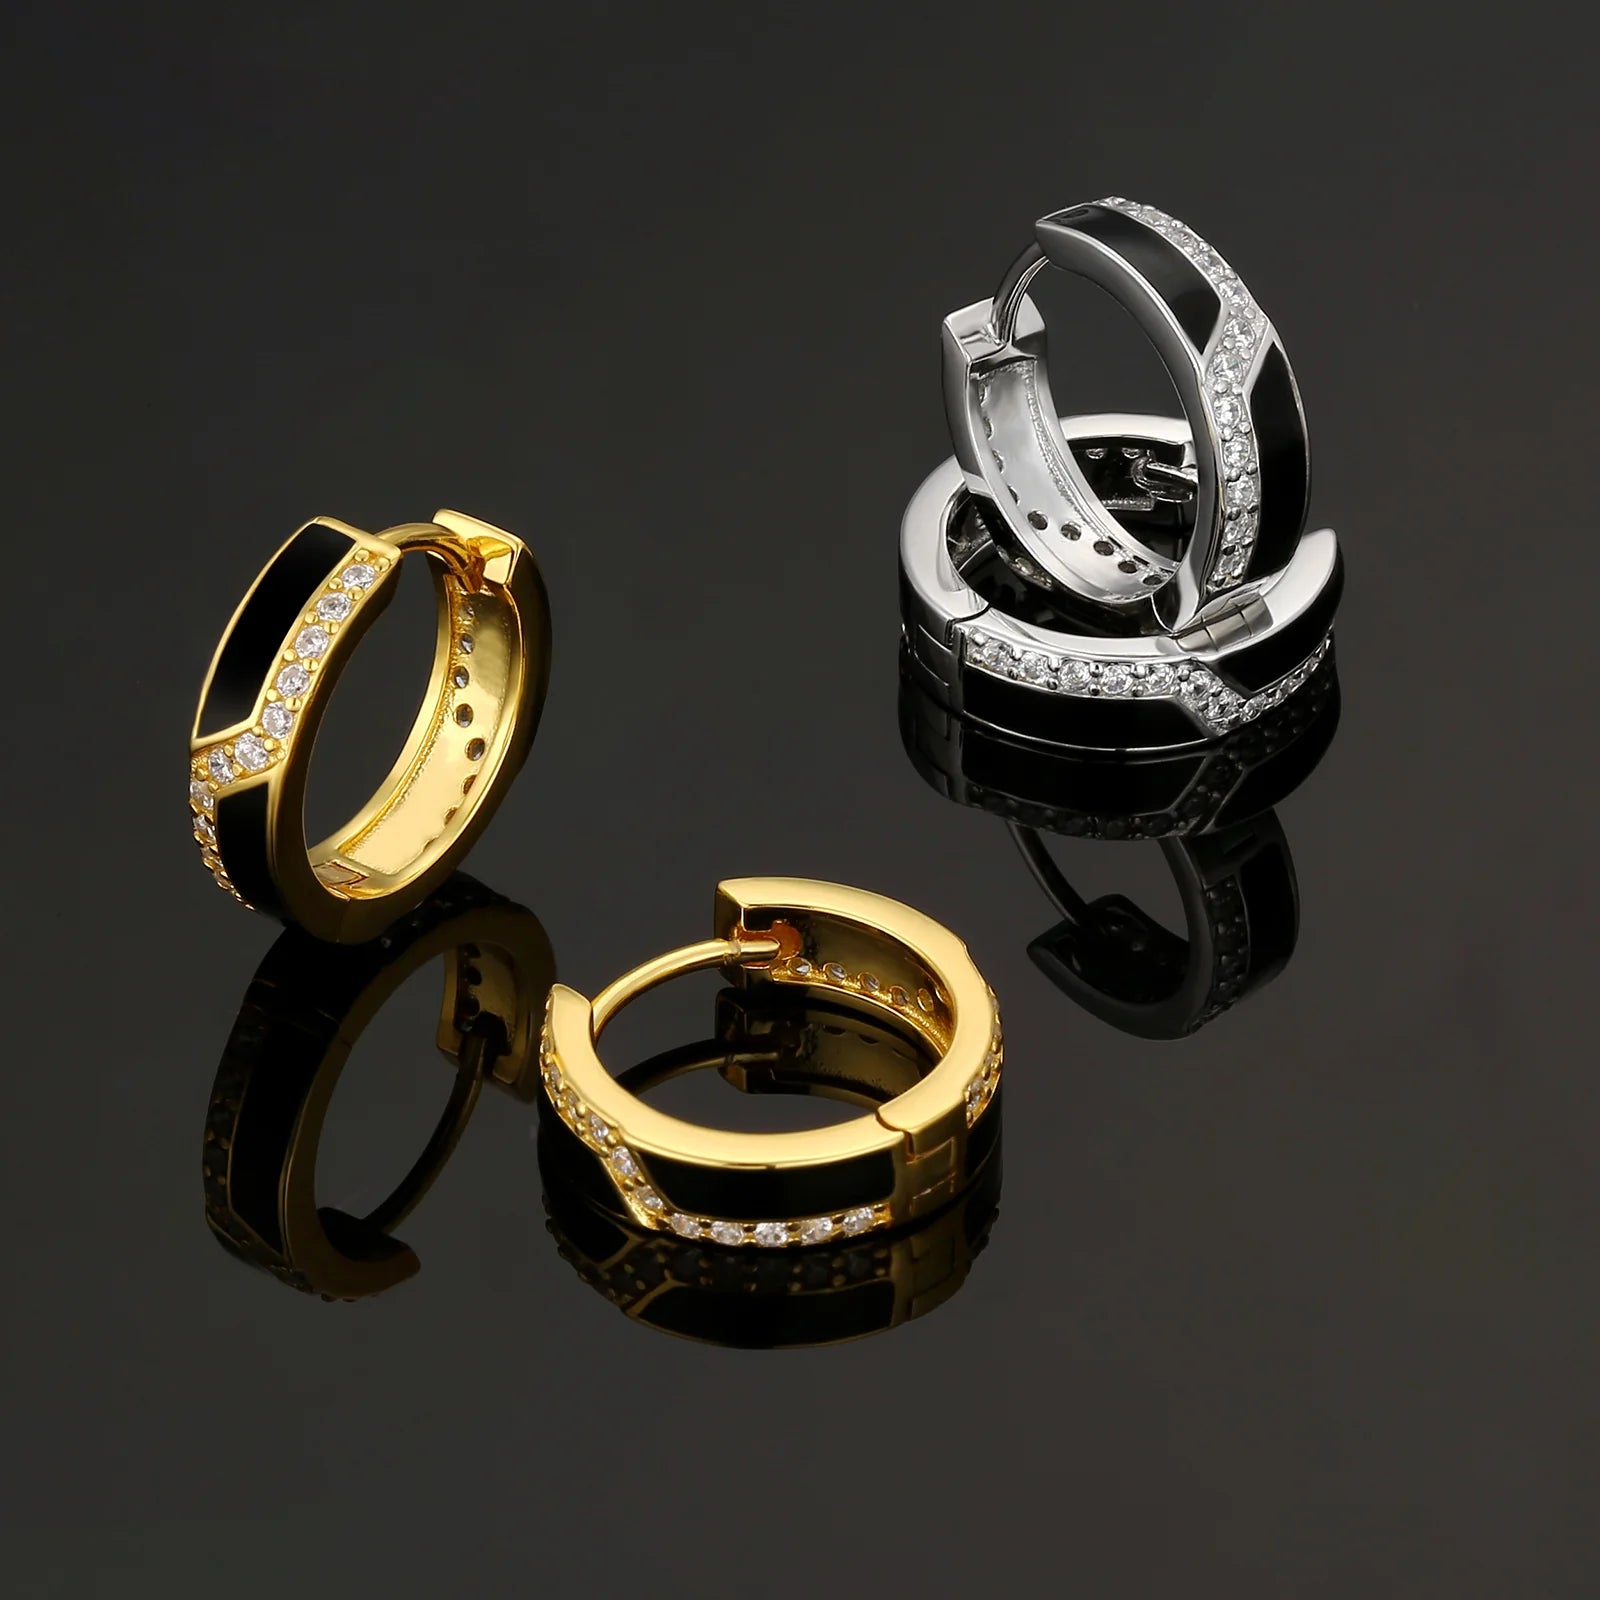 S925 Silver Iced Black Hoop Earrings in 14K Gold - 15mm Earrings 